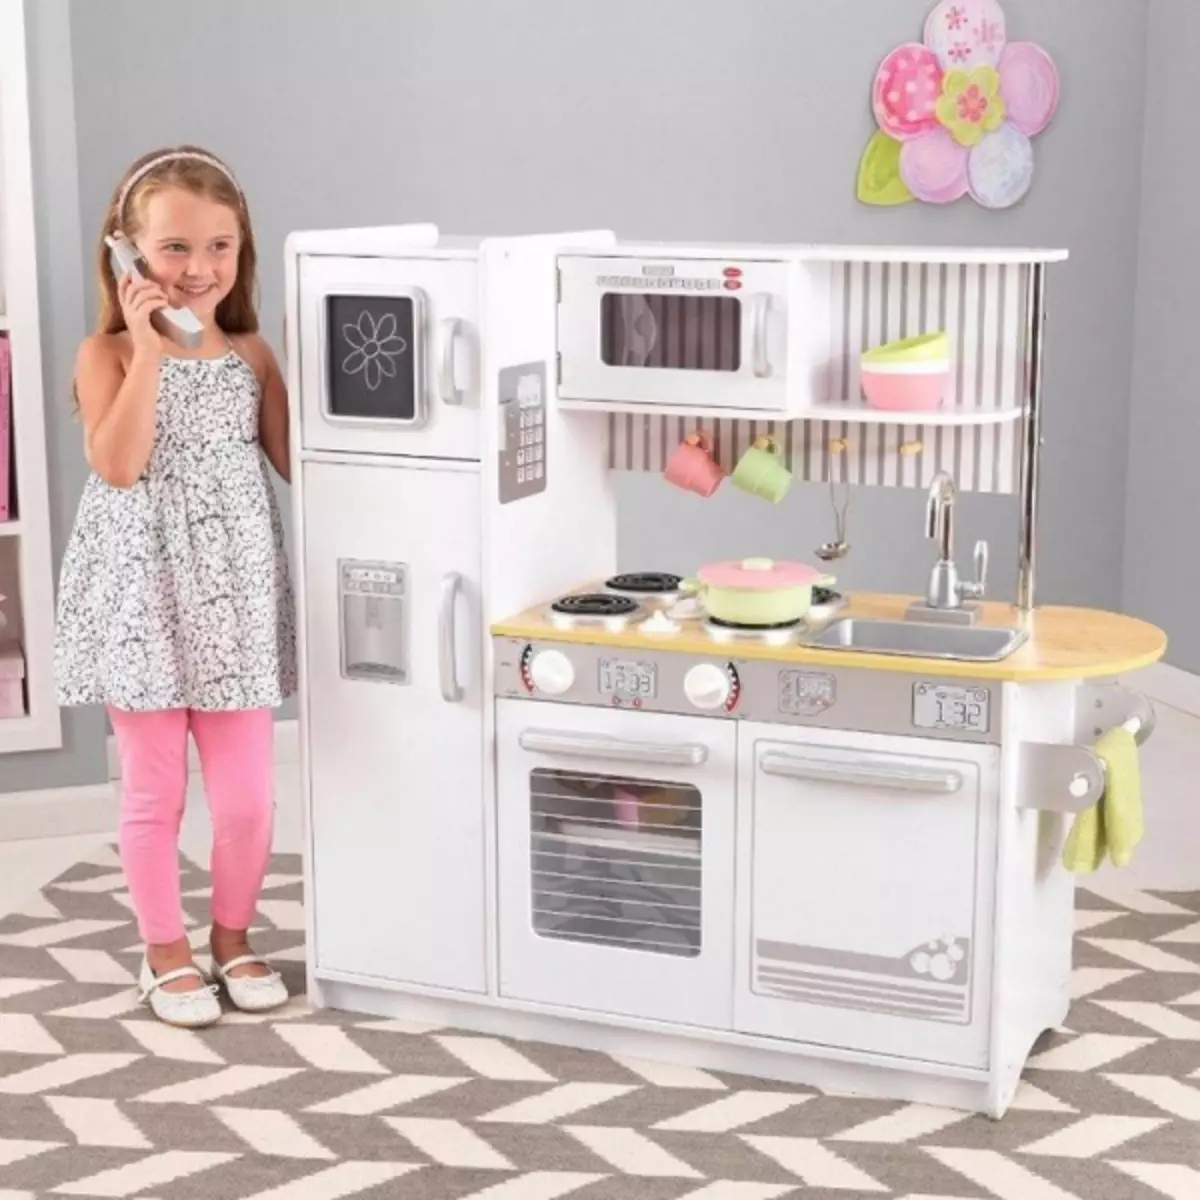 Dapur yang bergaya untuk kanak-kanak perempuan melakukannya sendiri